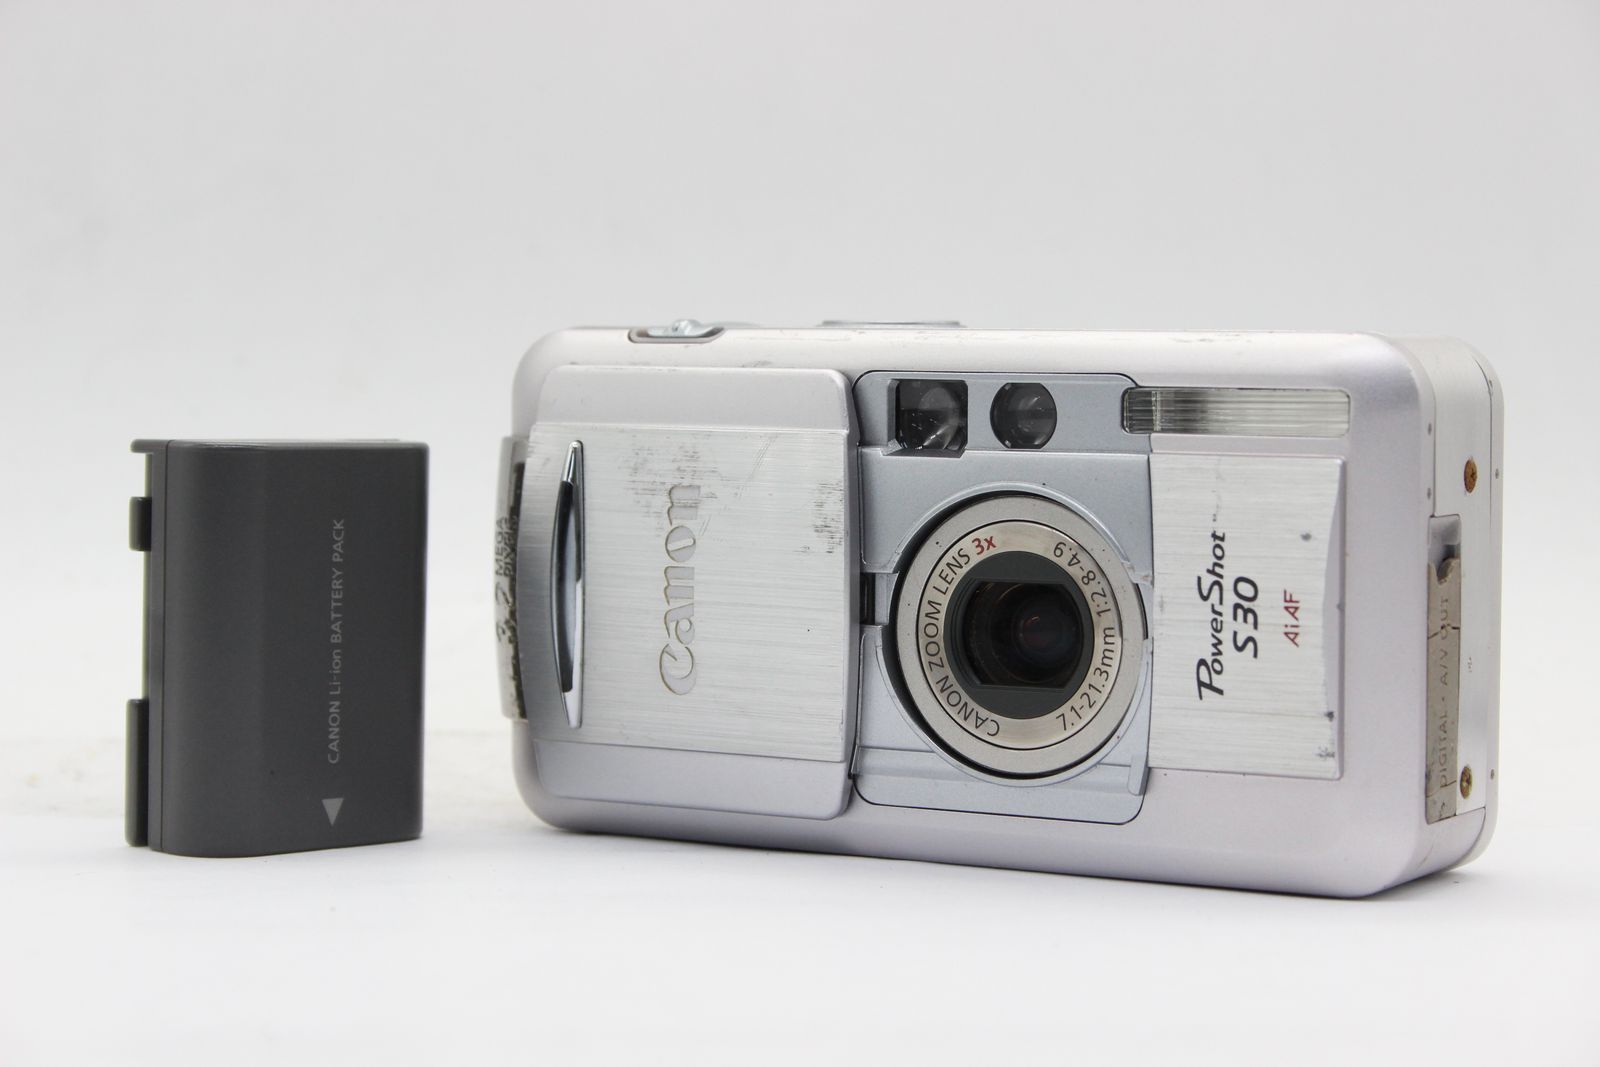 Canon Power-Shot S30 デジタルカメラ フルセット